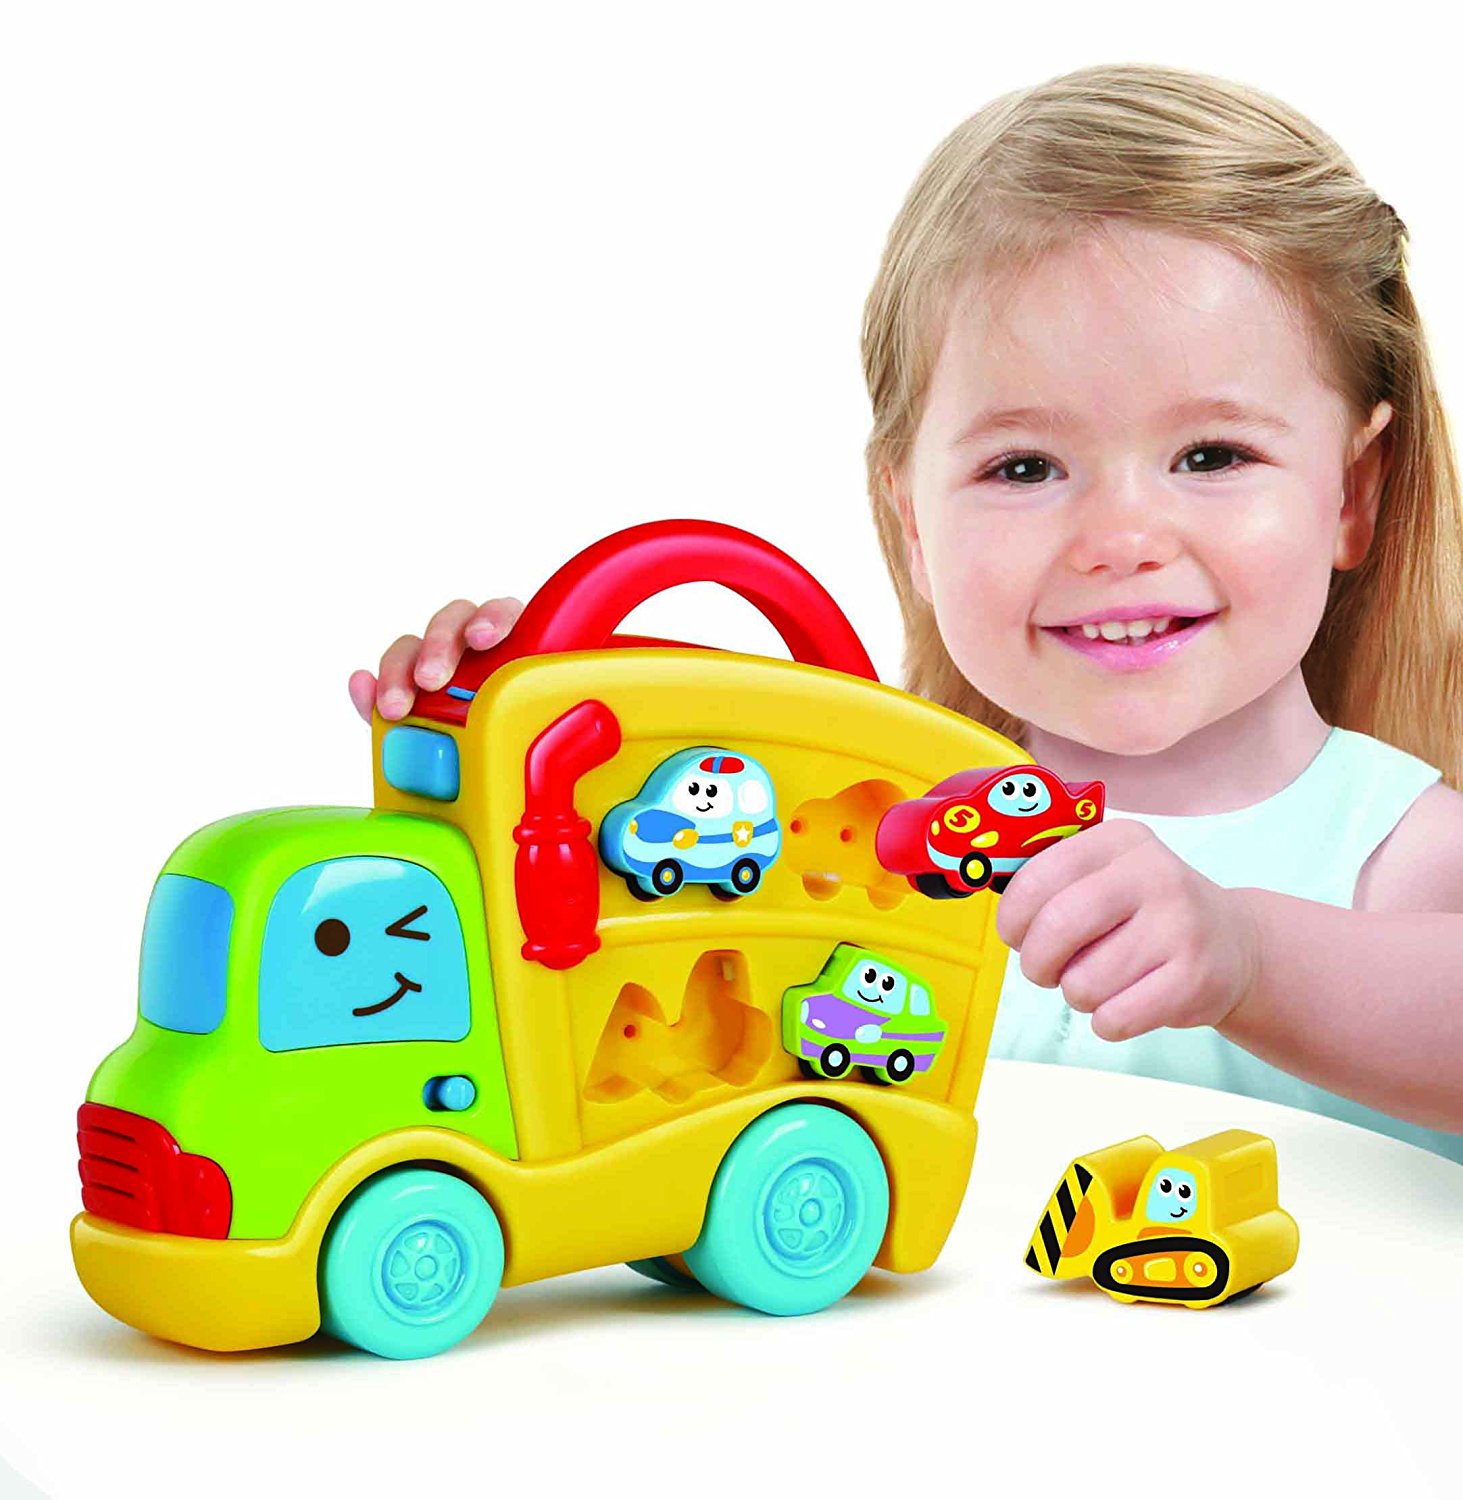 Машинка со звуками. Звуковые машинки для детей. Машинки со звуком. Для малышей. Машины. Набор машинок для малыша со звуковыми эффектами.